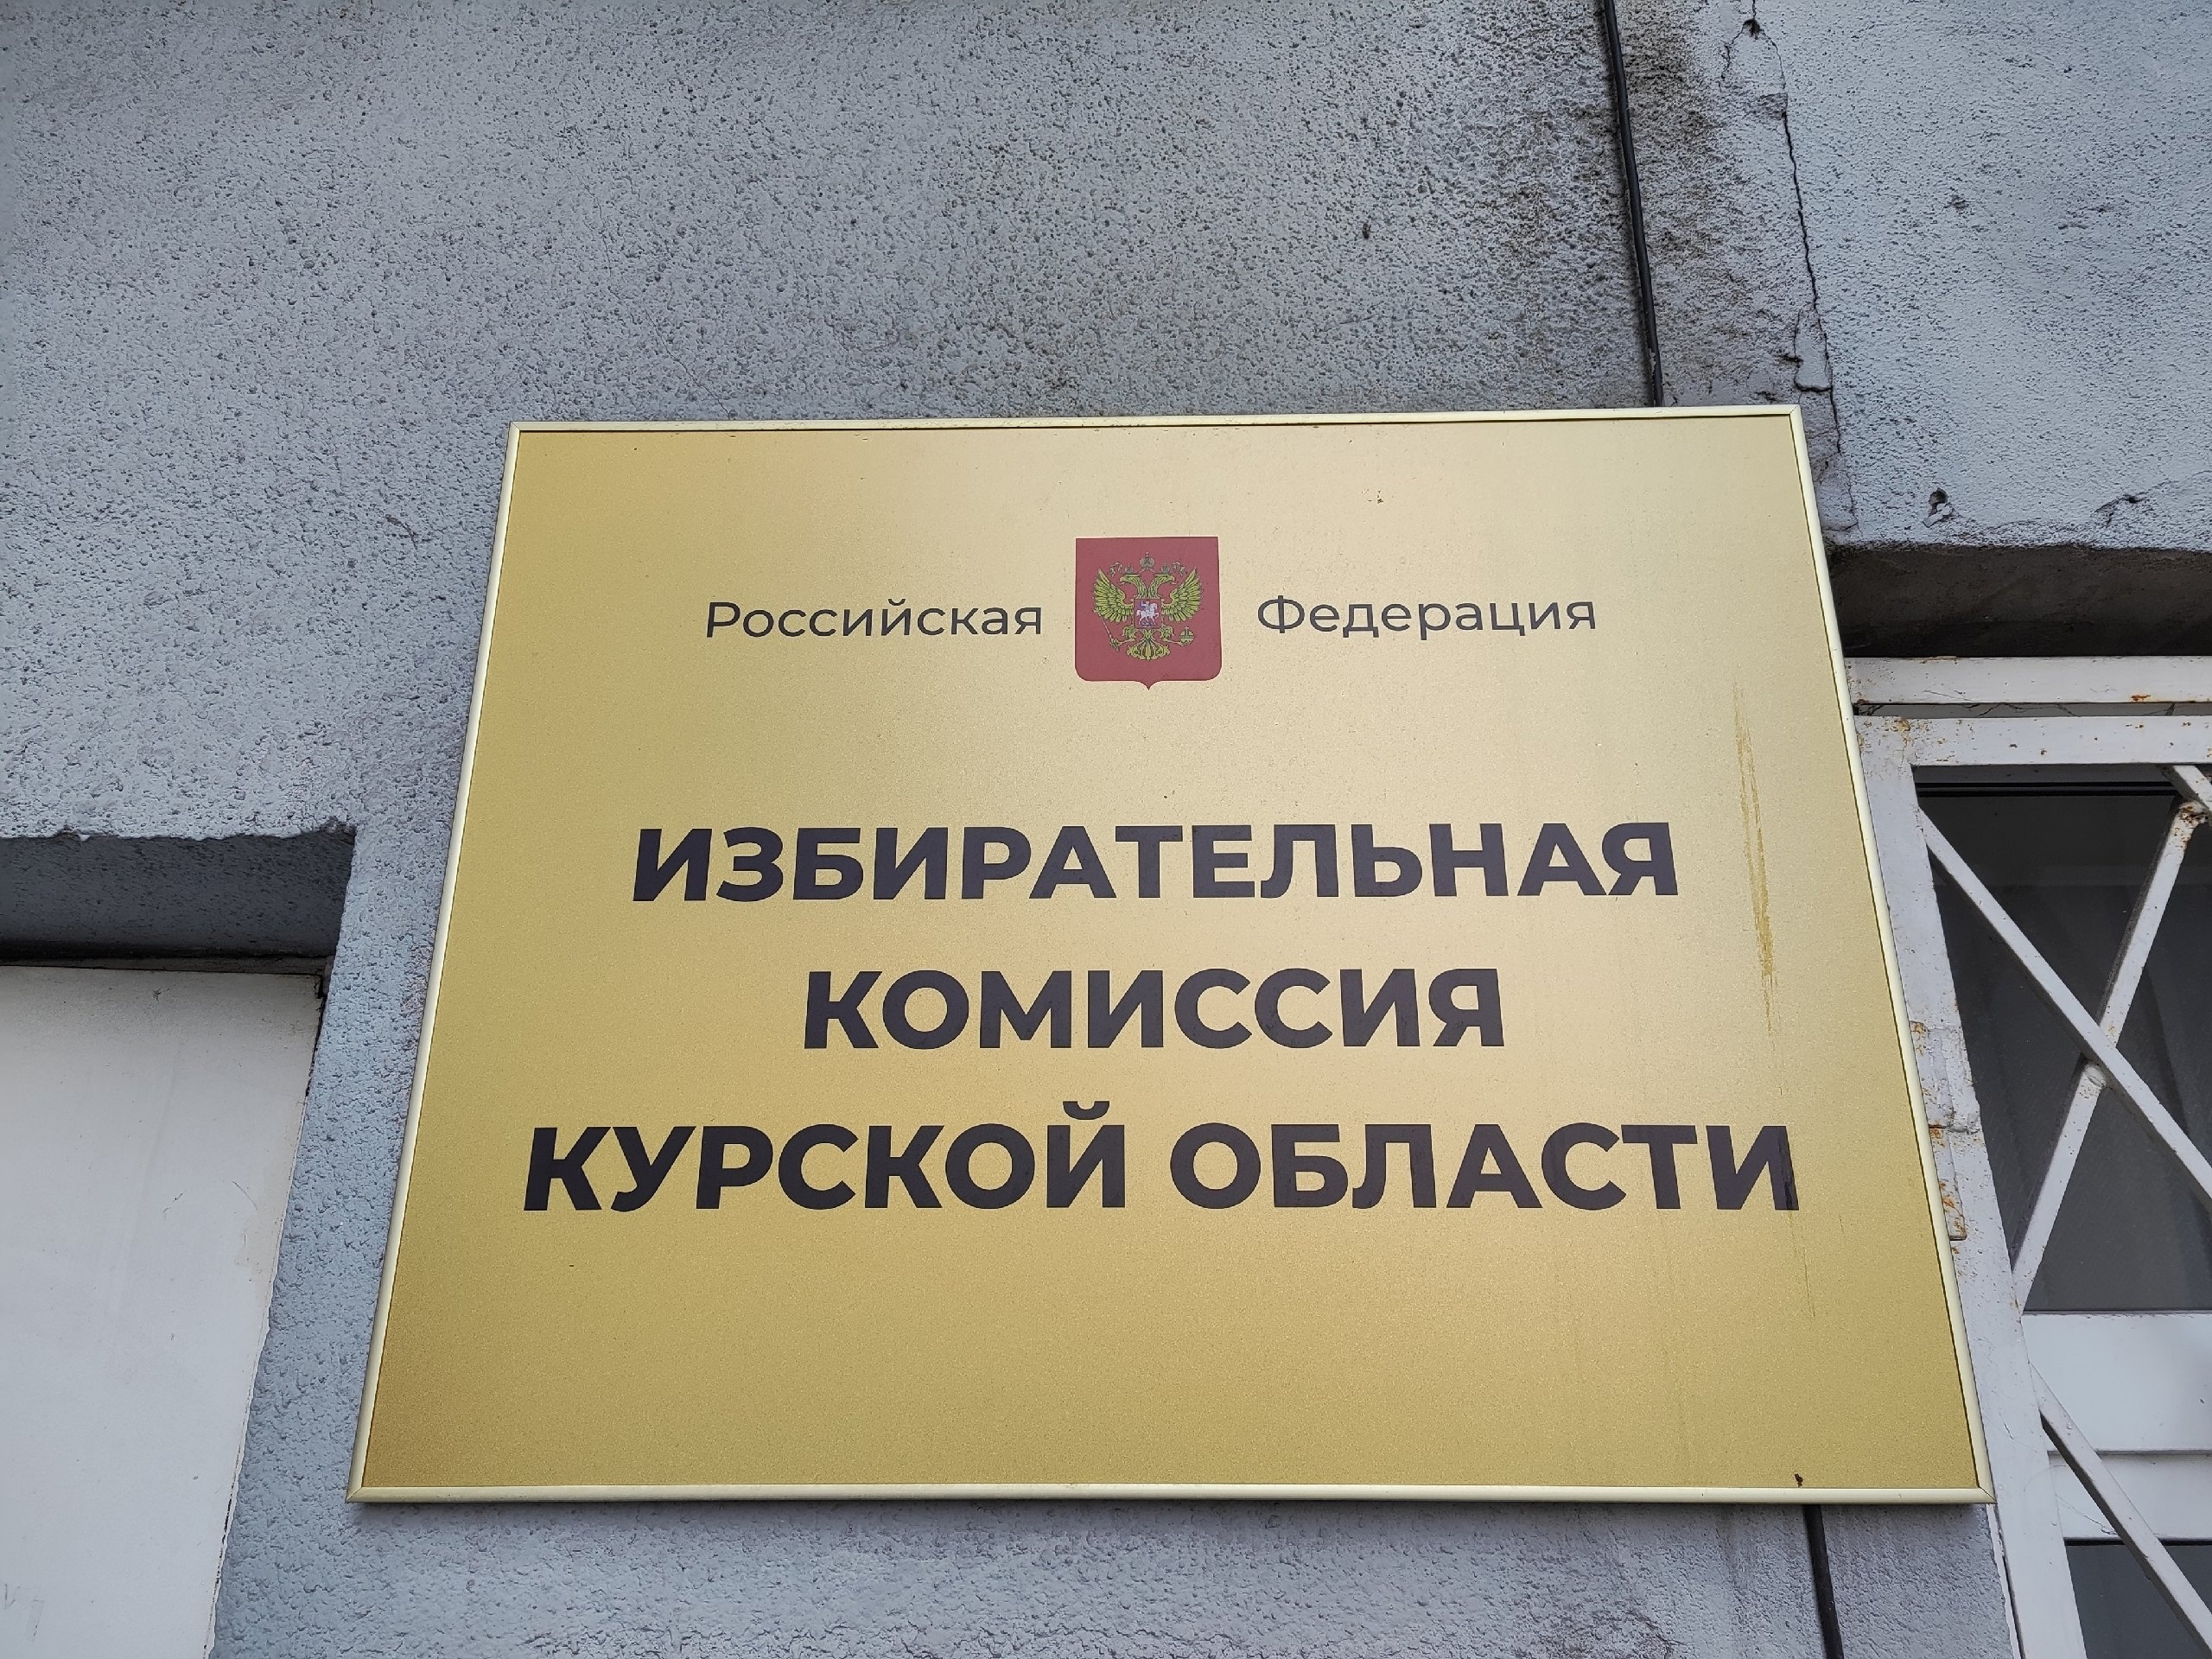 В Курской области началась избирательная кампания по выборам губернатора